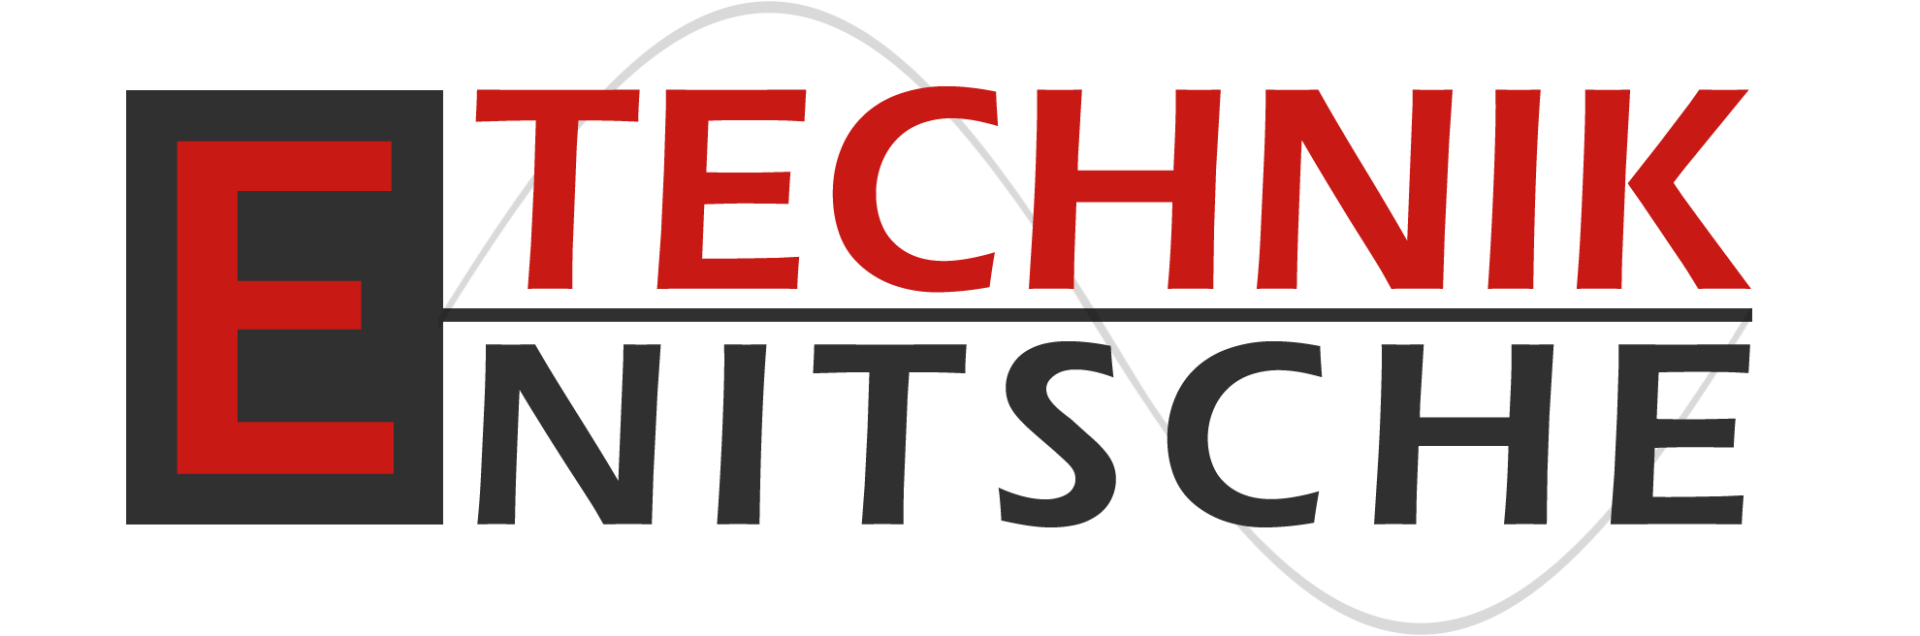 E-Technik Nitsche GmbH